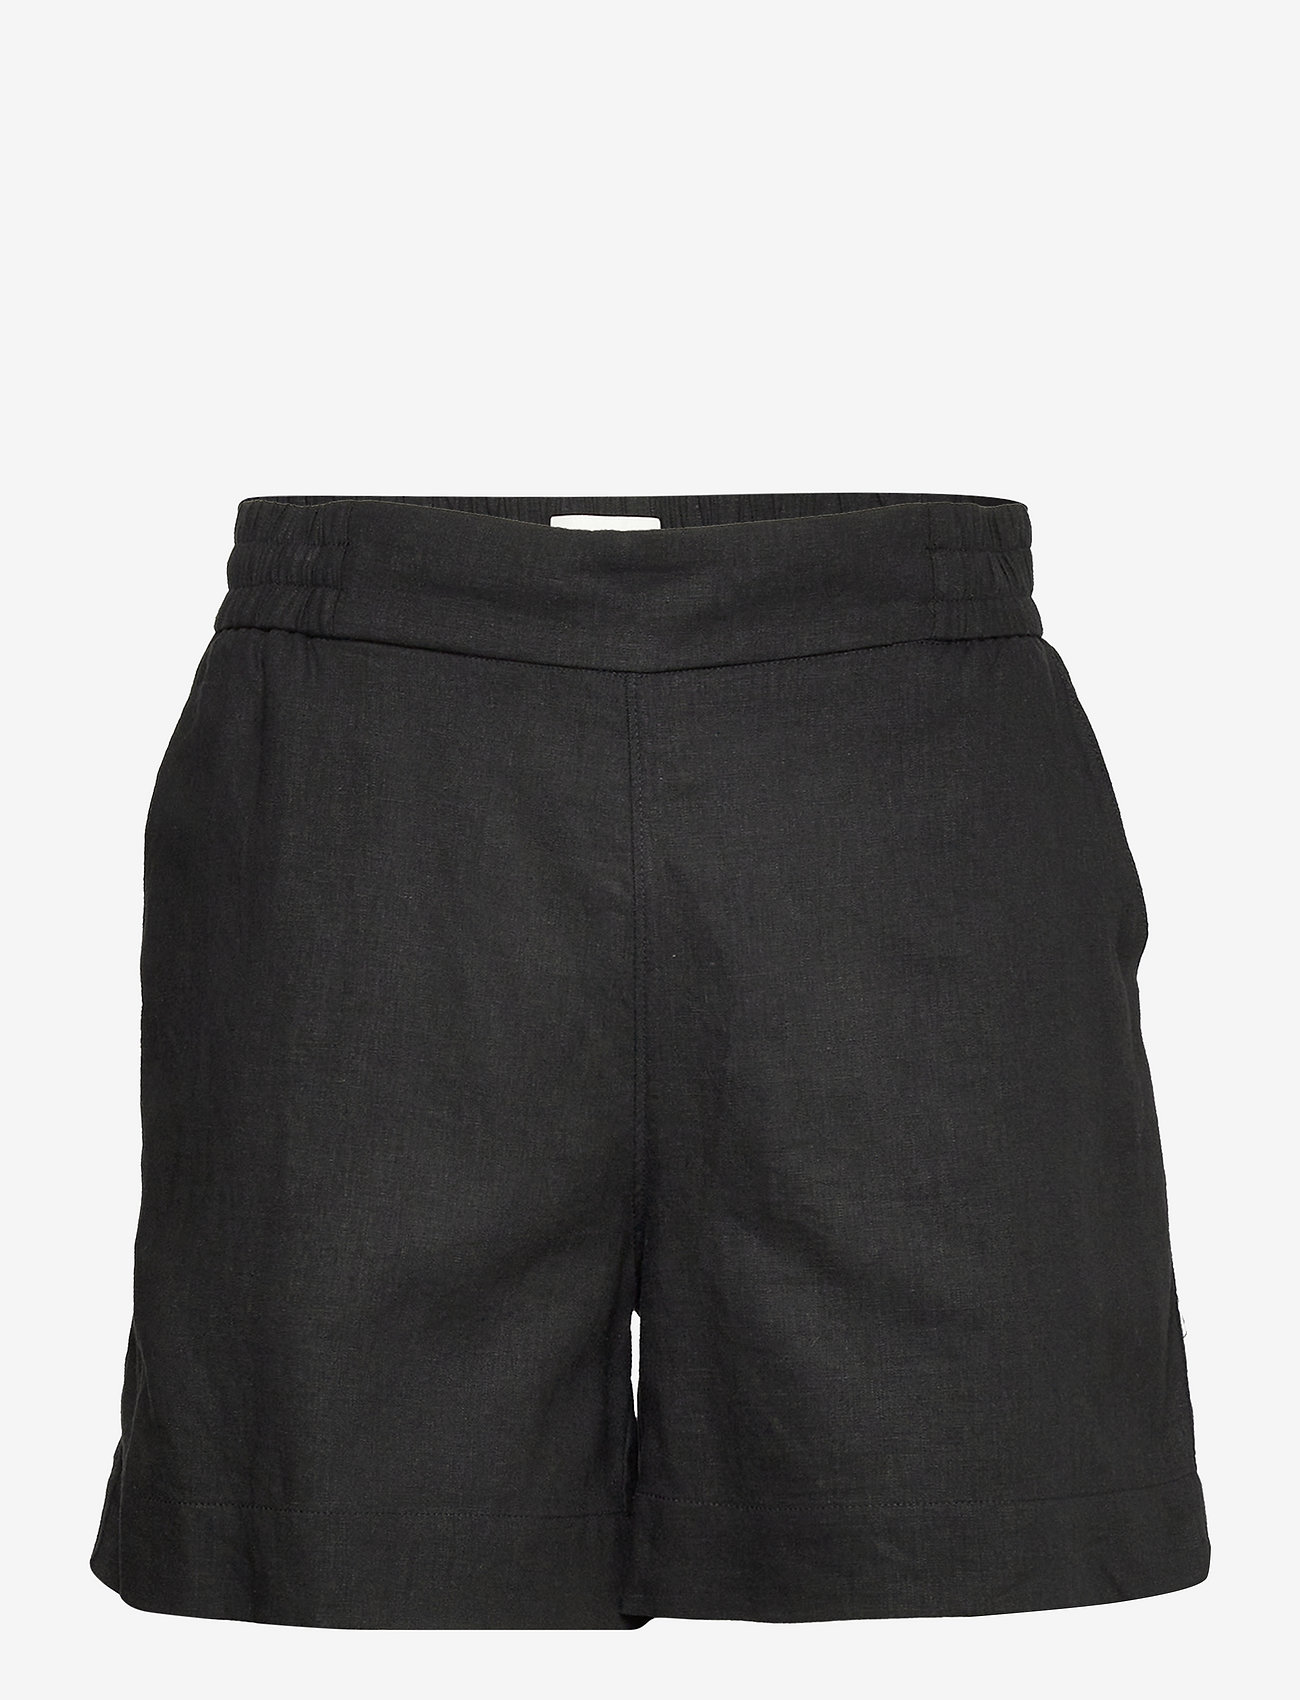 FIVEUNITS Linea Shorts 763 Black - Casual shorts | Boozt.com